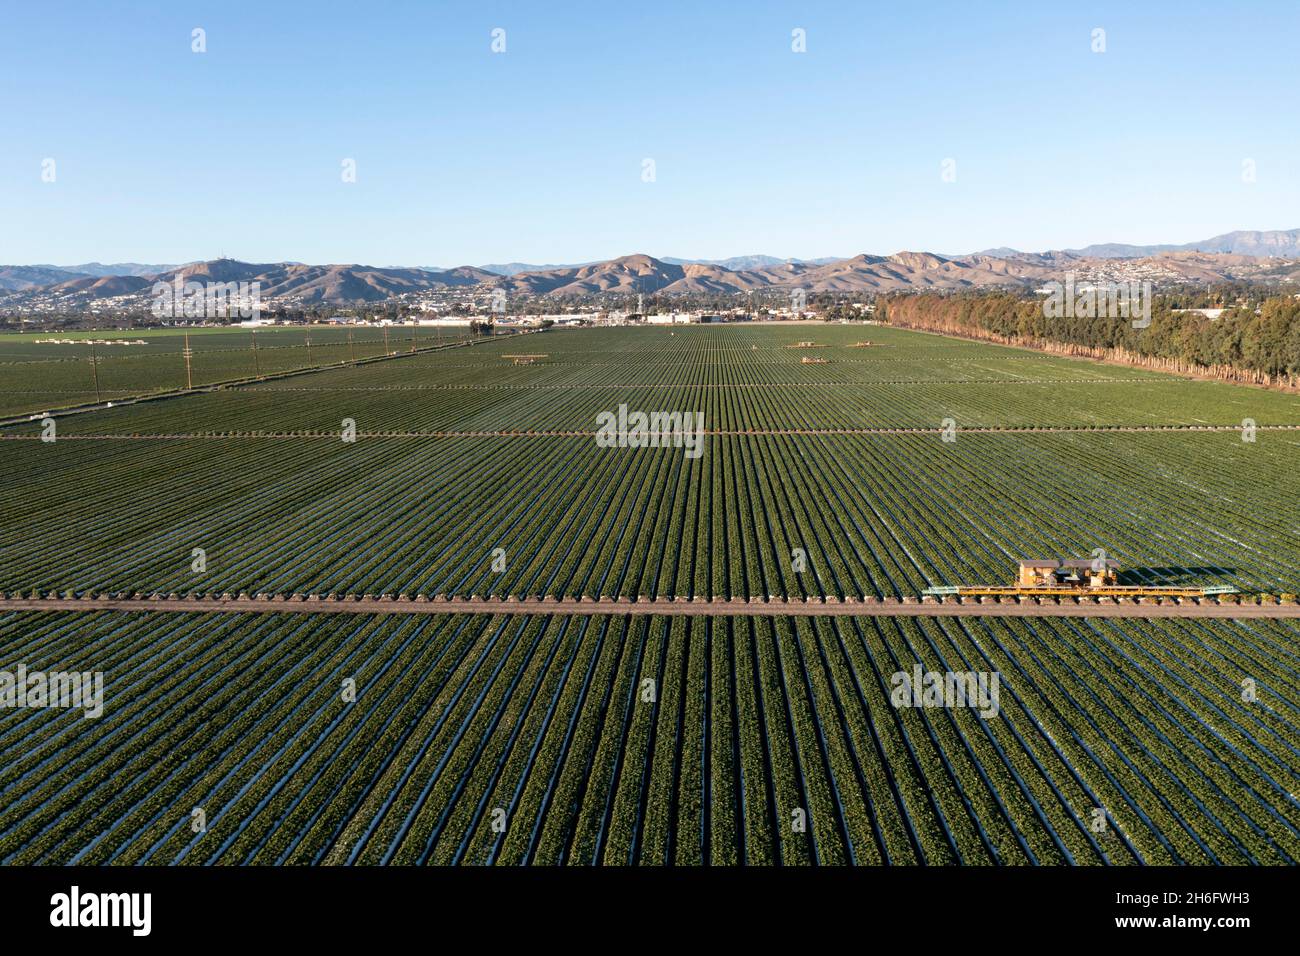 Strawberry fields on the Oxnard coastal plain near Ventura, California Stock Photo